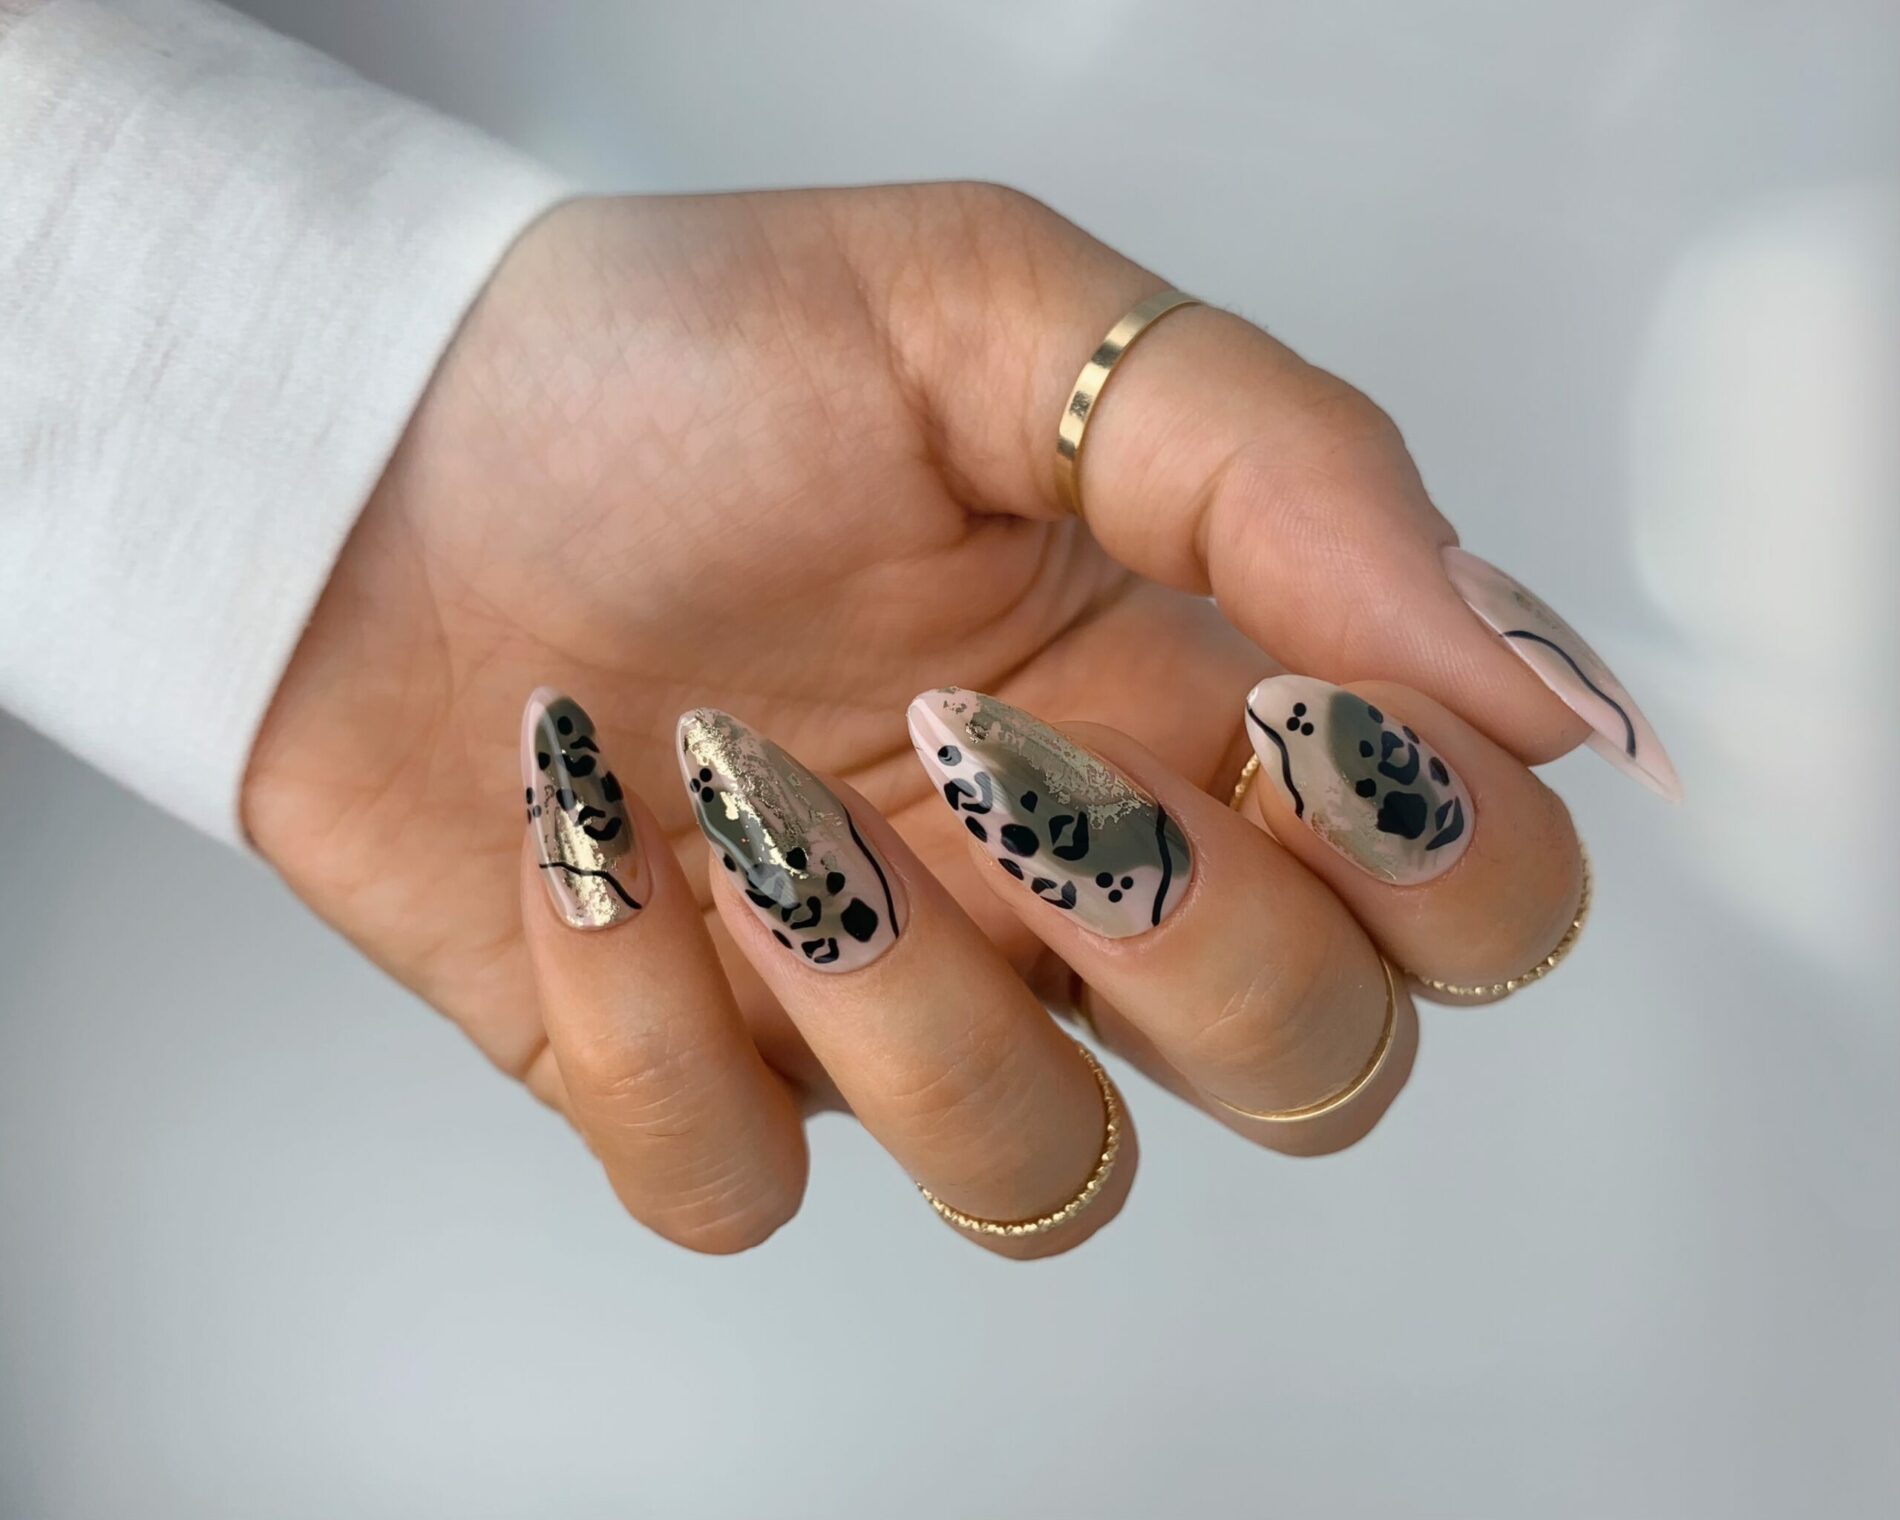 BST mẫu nail đính đá lấp lánh kiêu sa – KellyPang Nail